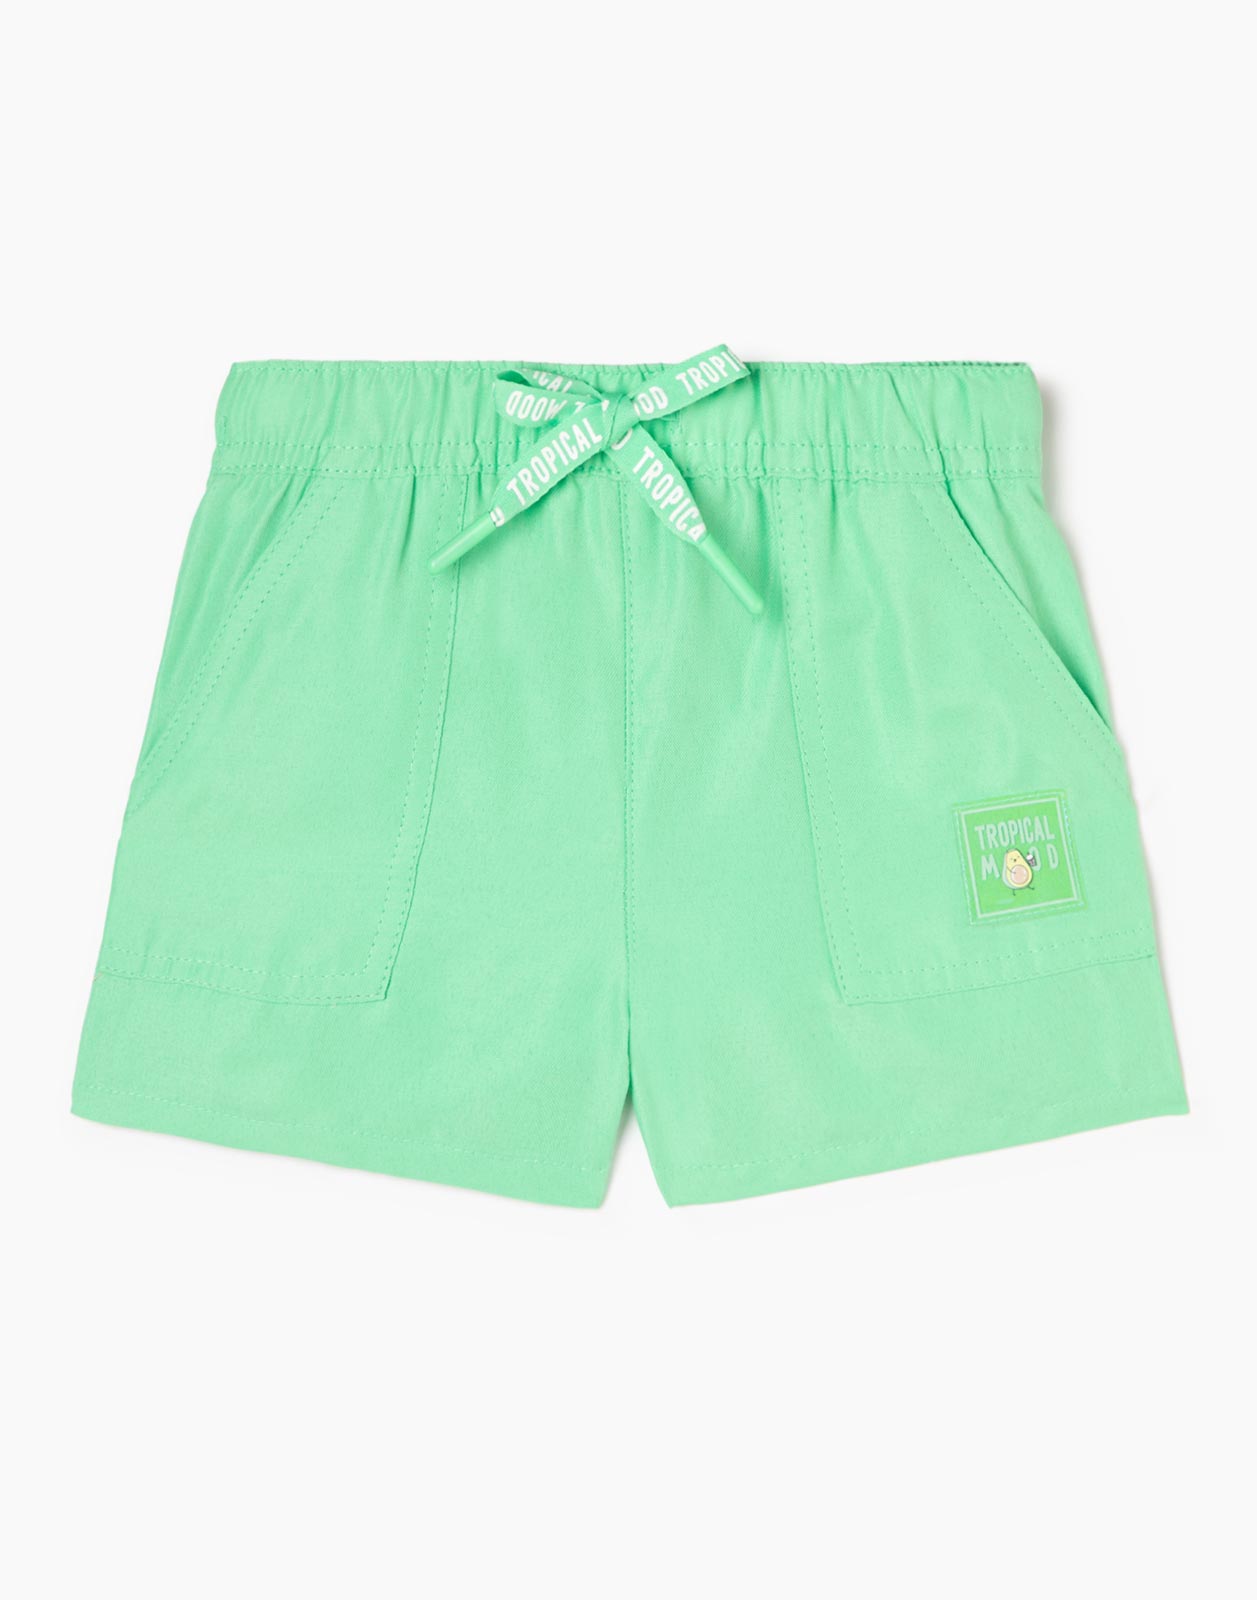 Зелёные шорты с нашивкой Tropical mood для девочки р.110